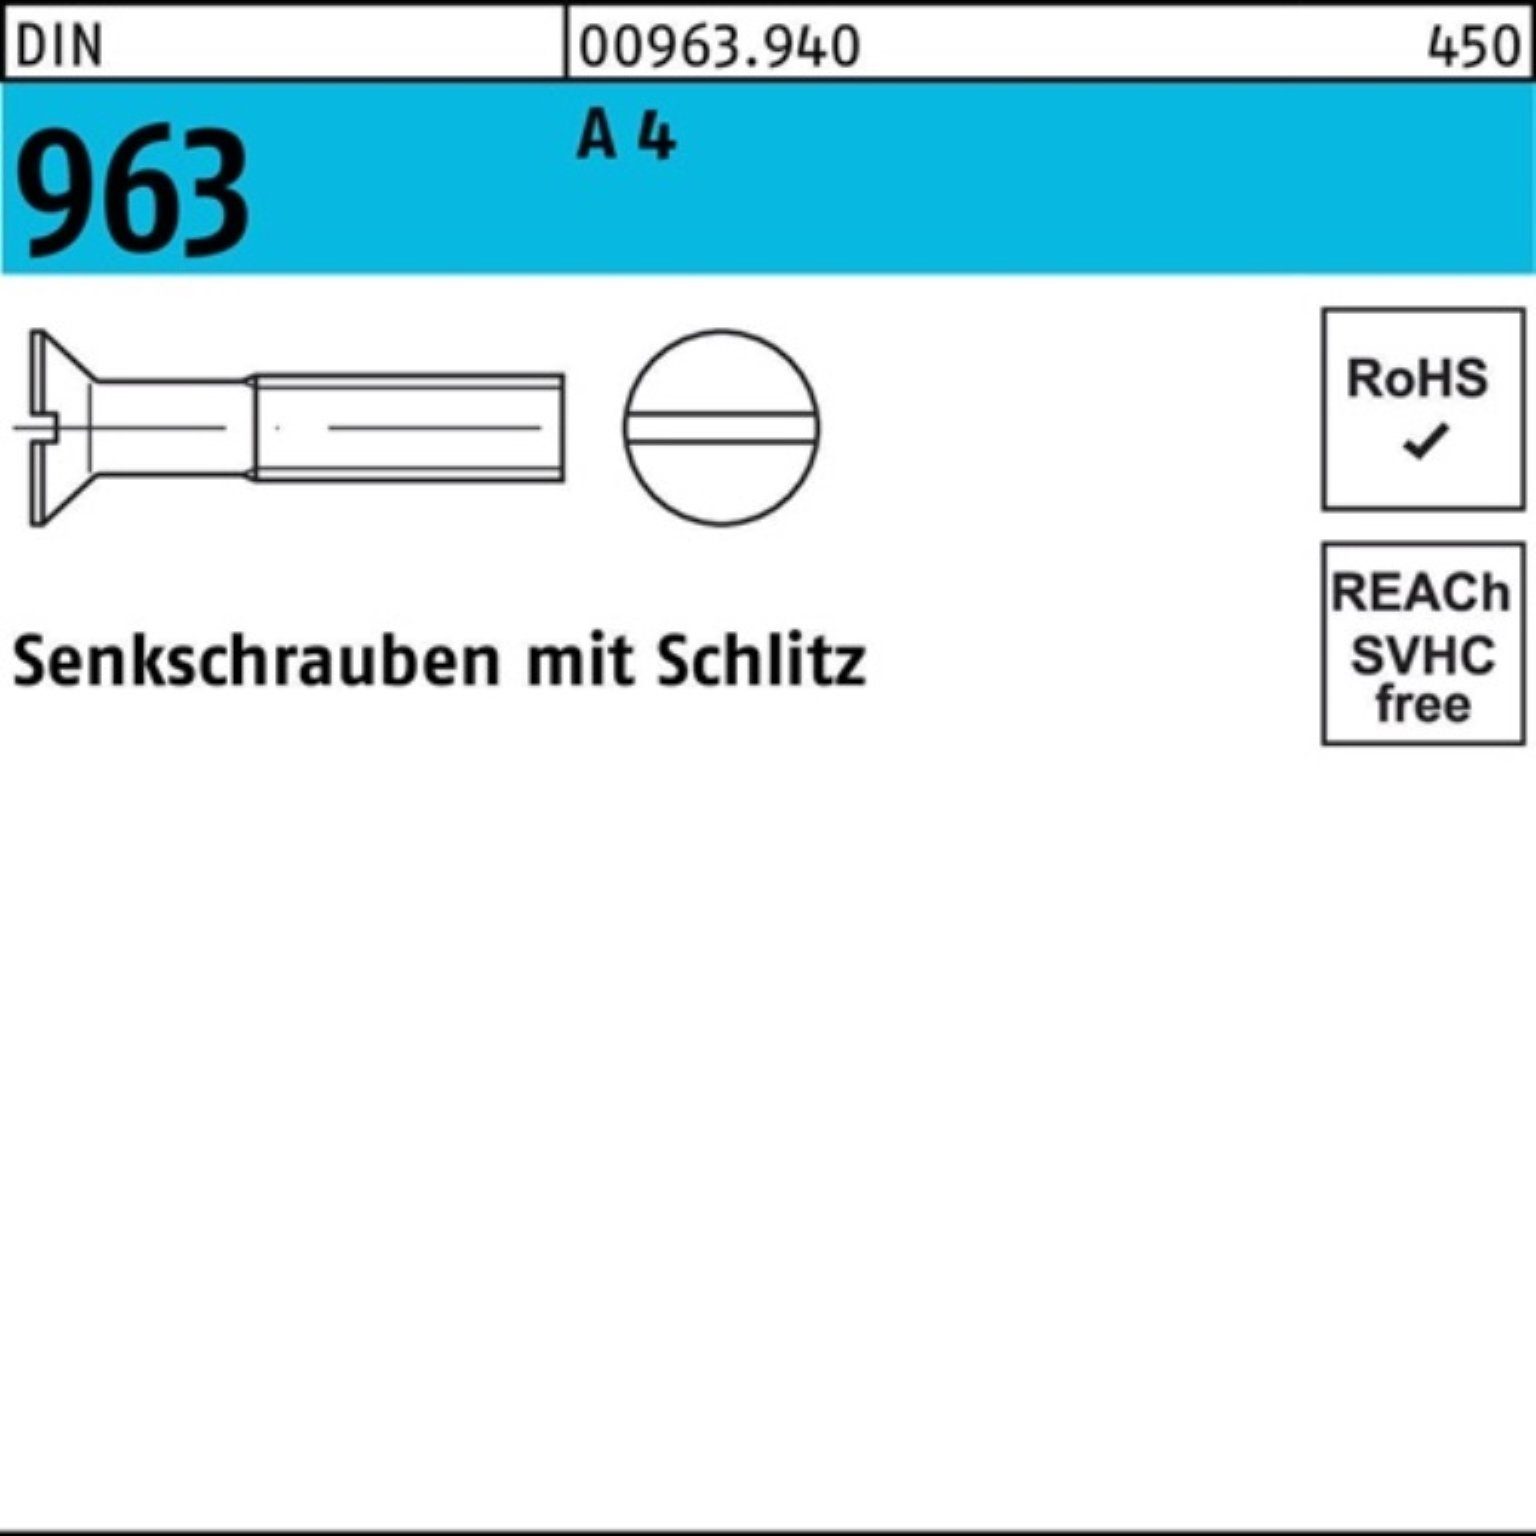 Reyher Senkschraube 1000 96 20 963 DIN A 4 Senkschraube DIN 1000er Stück Pack Schlitz M3x